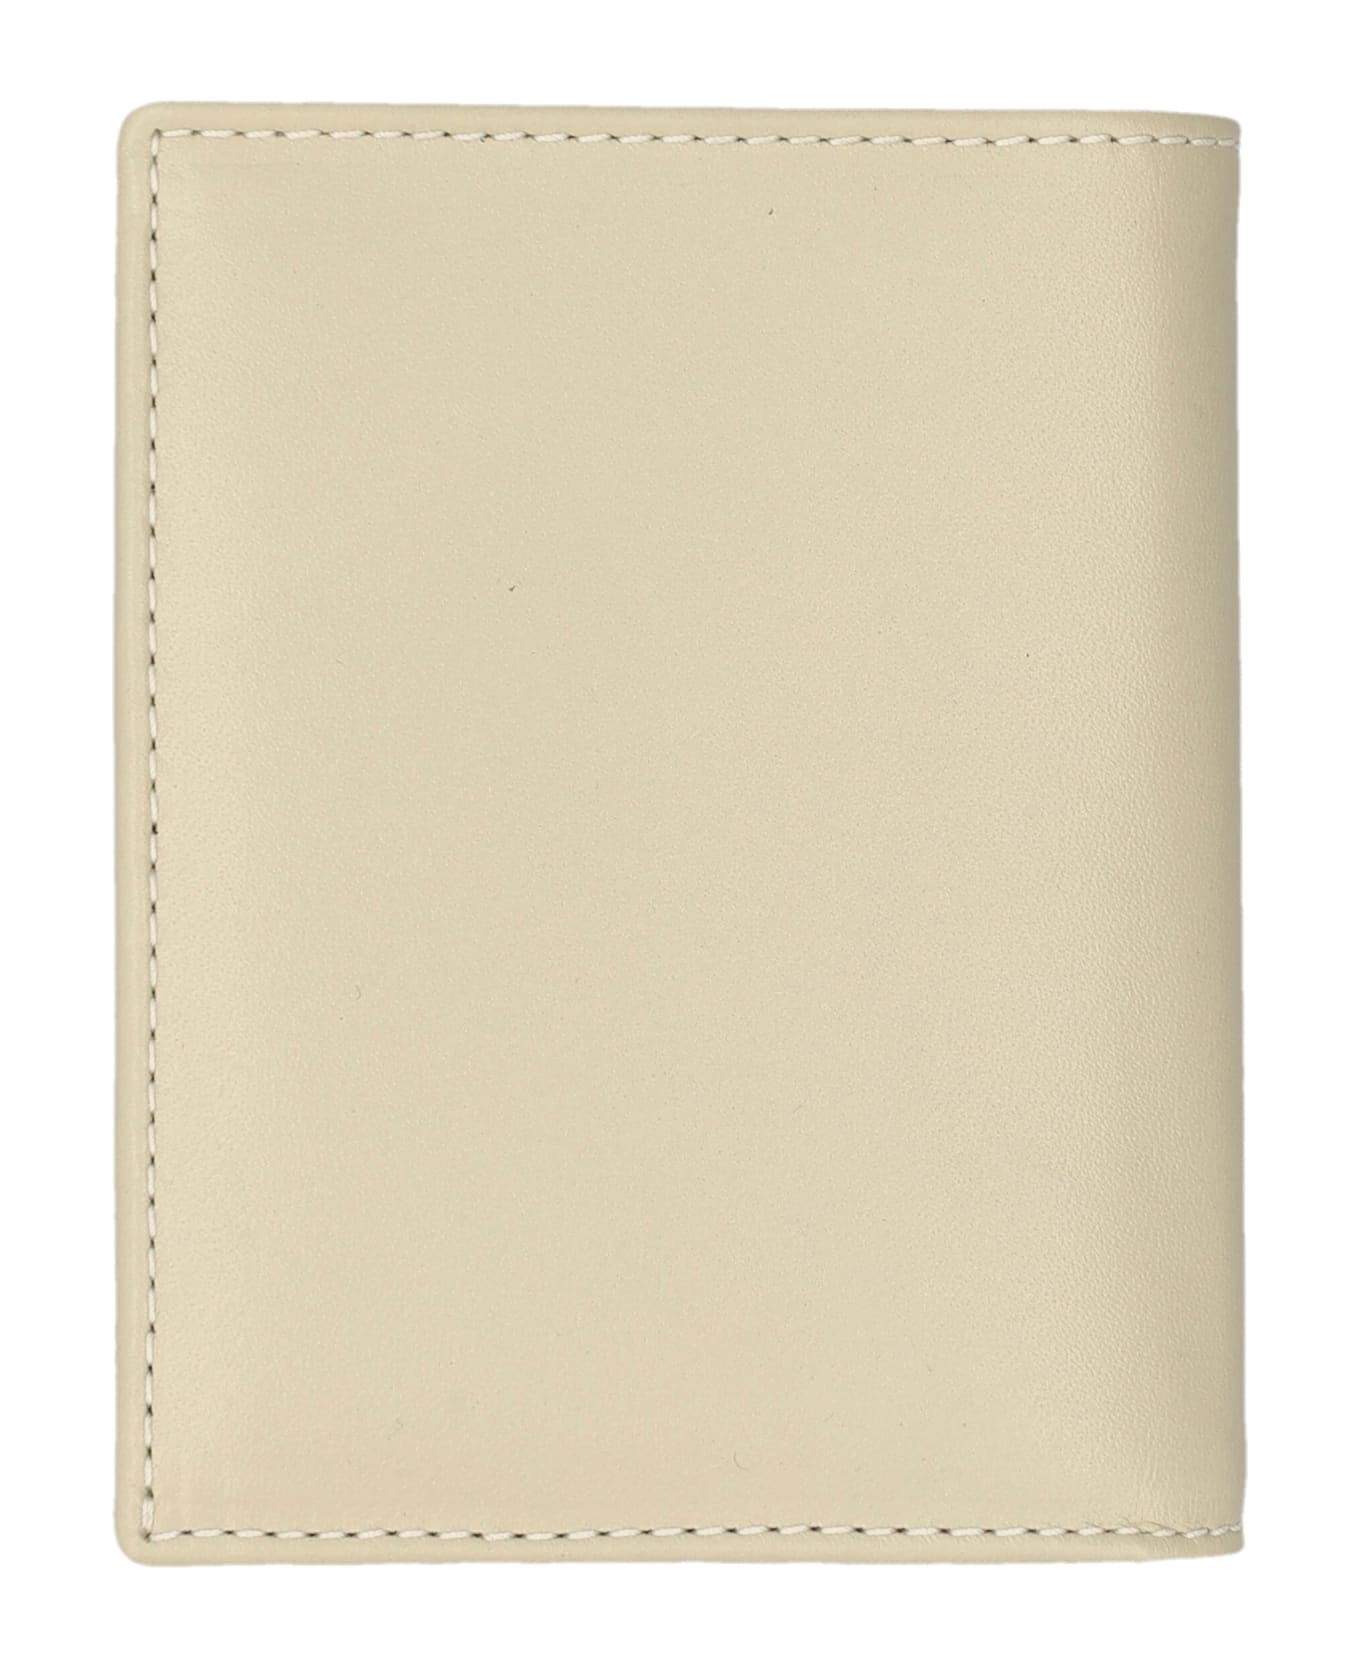 Comme des Garçons Wallet Classic Cardholder - OFF WHITE 財布